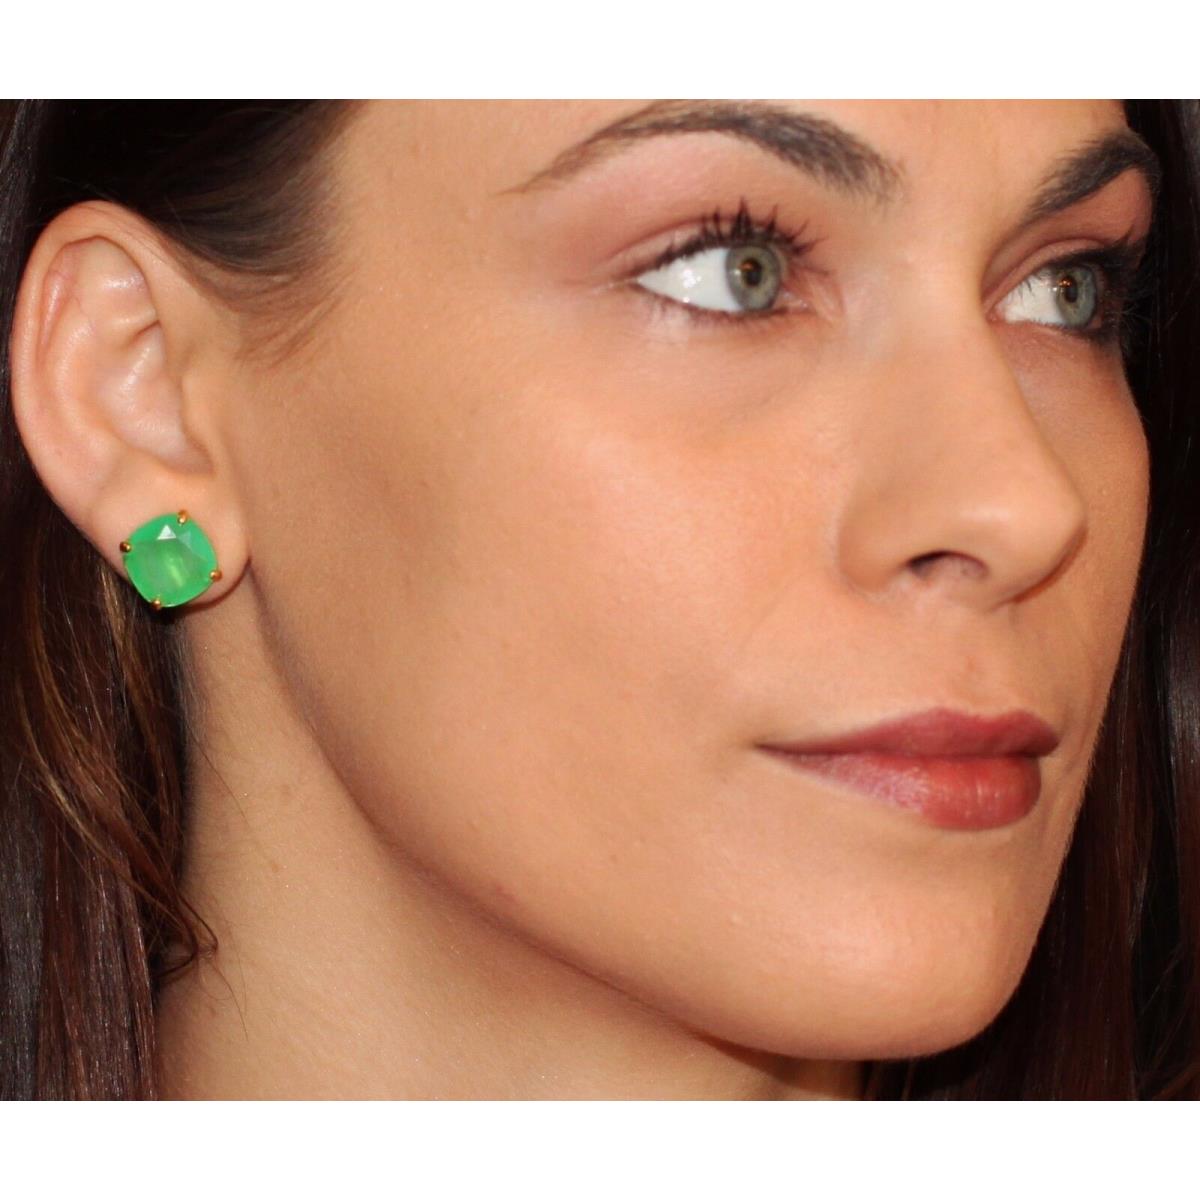 Gumdrop Kate Spade Earrings Emerald Green Kenneth Jay Lane Beaded Drop Lot 2